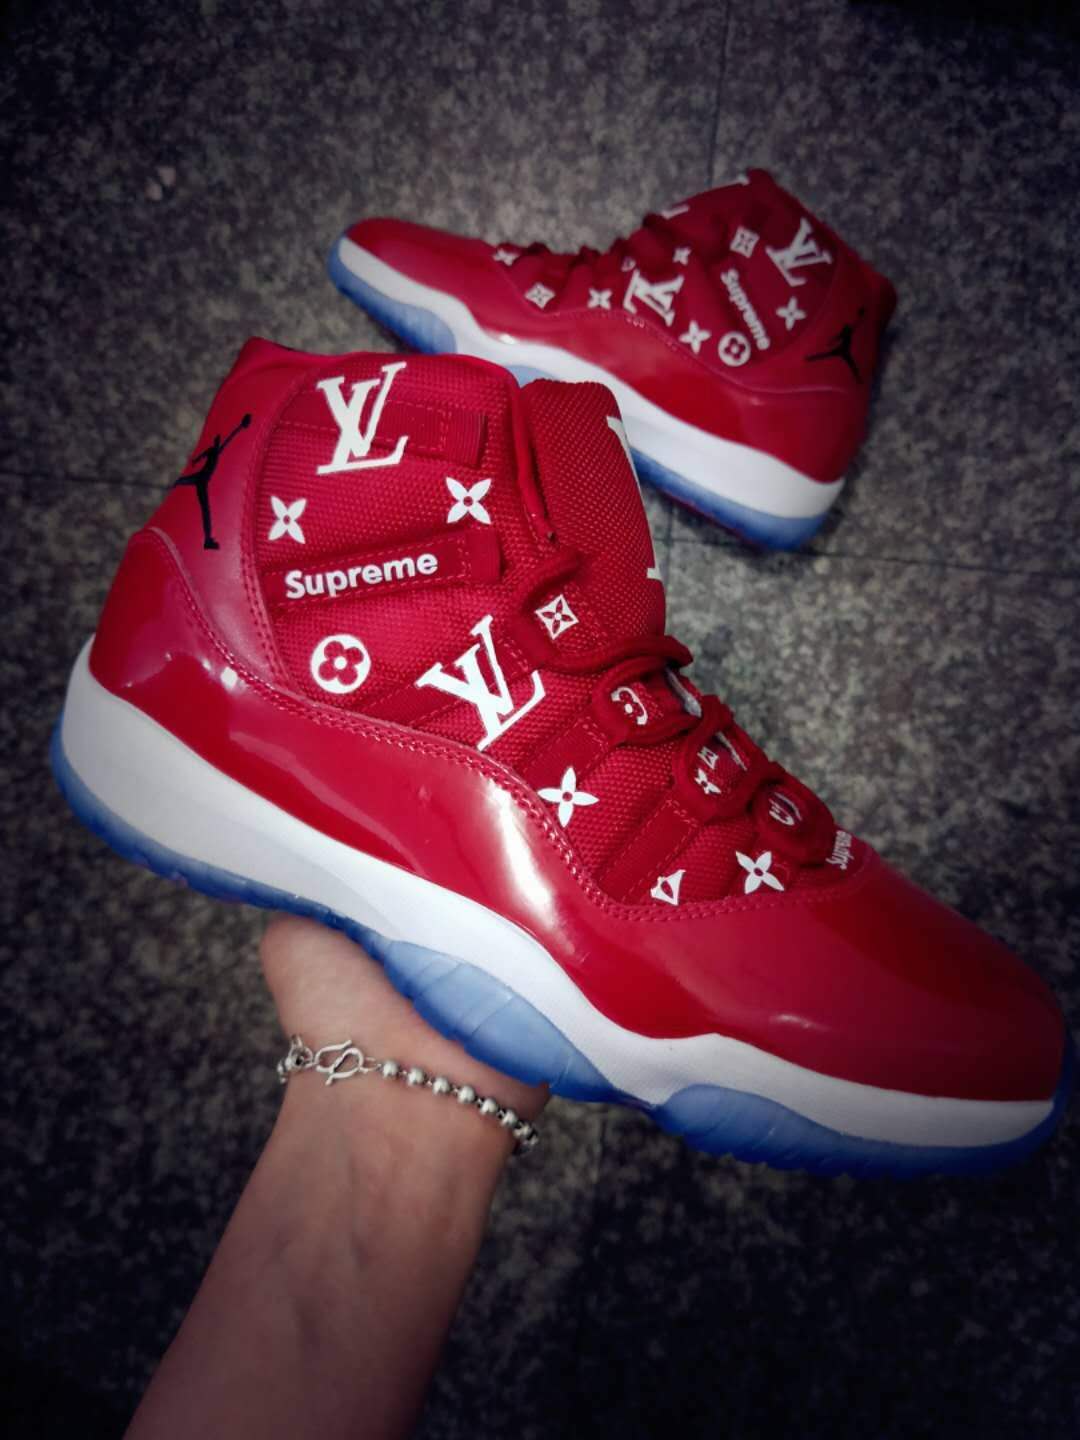 Jordans 11 LV Red Color Shoes - Click Image to Close